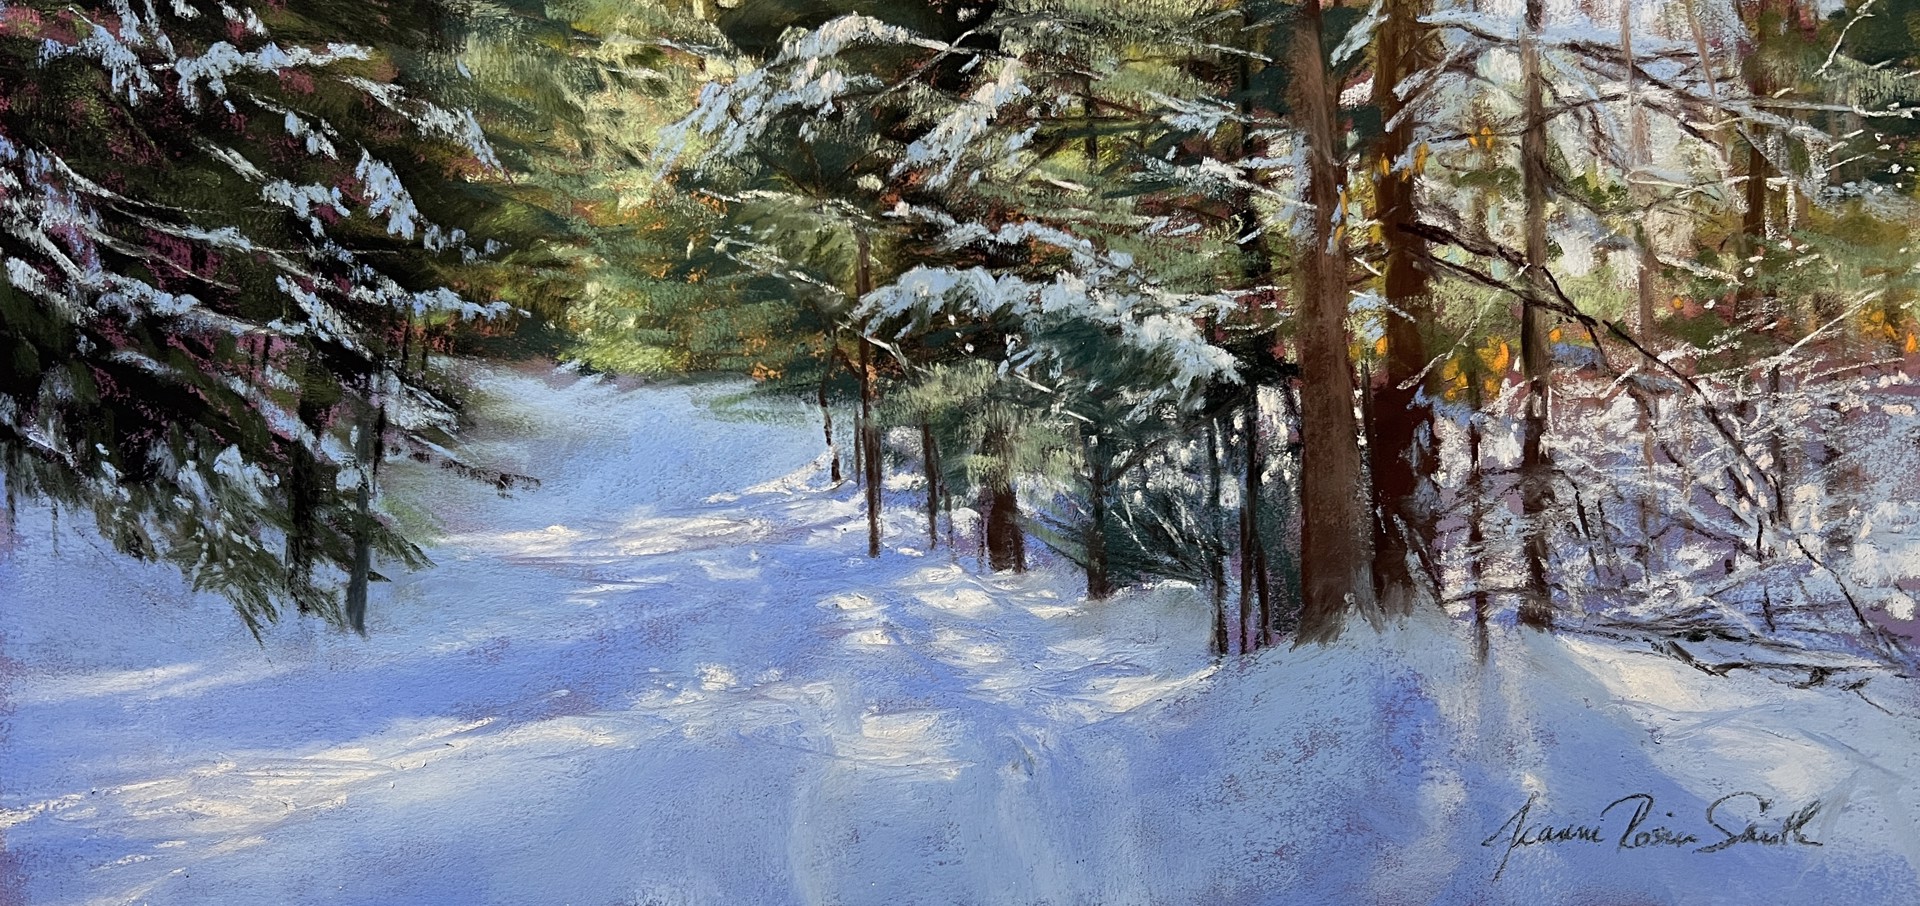 Winter Walk by JEANNE ROSIER SMITH